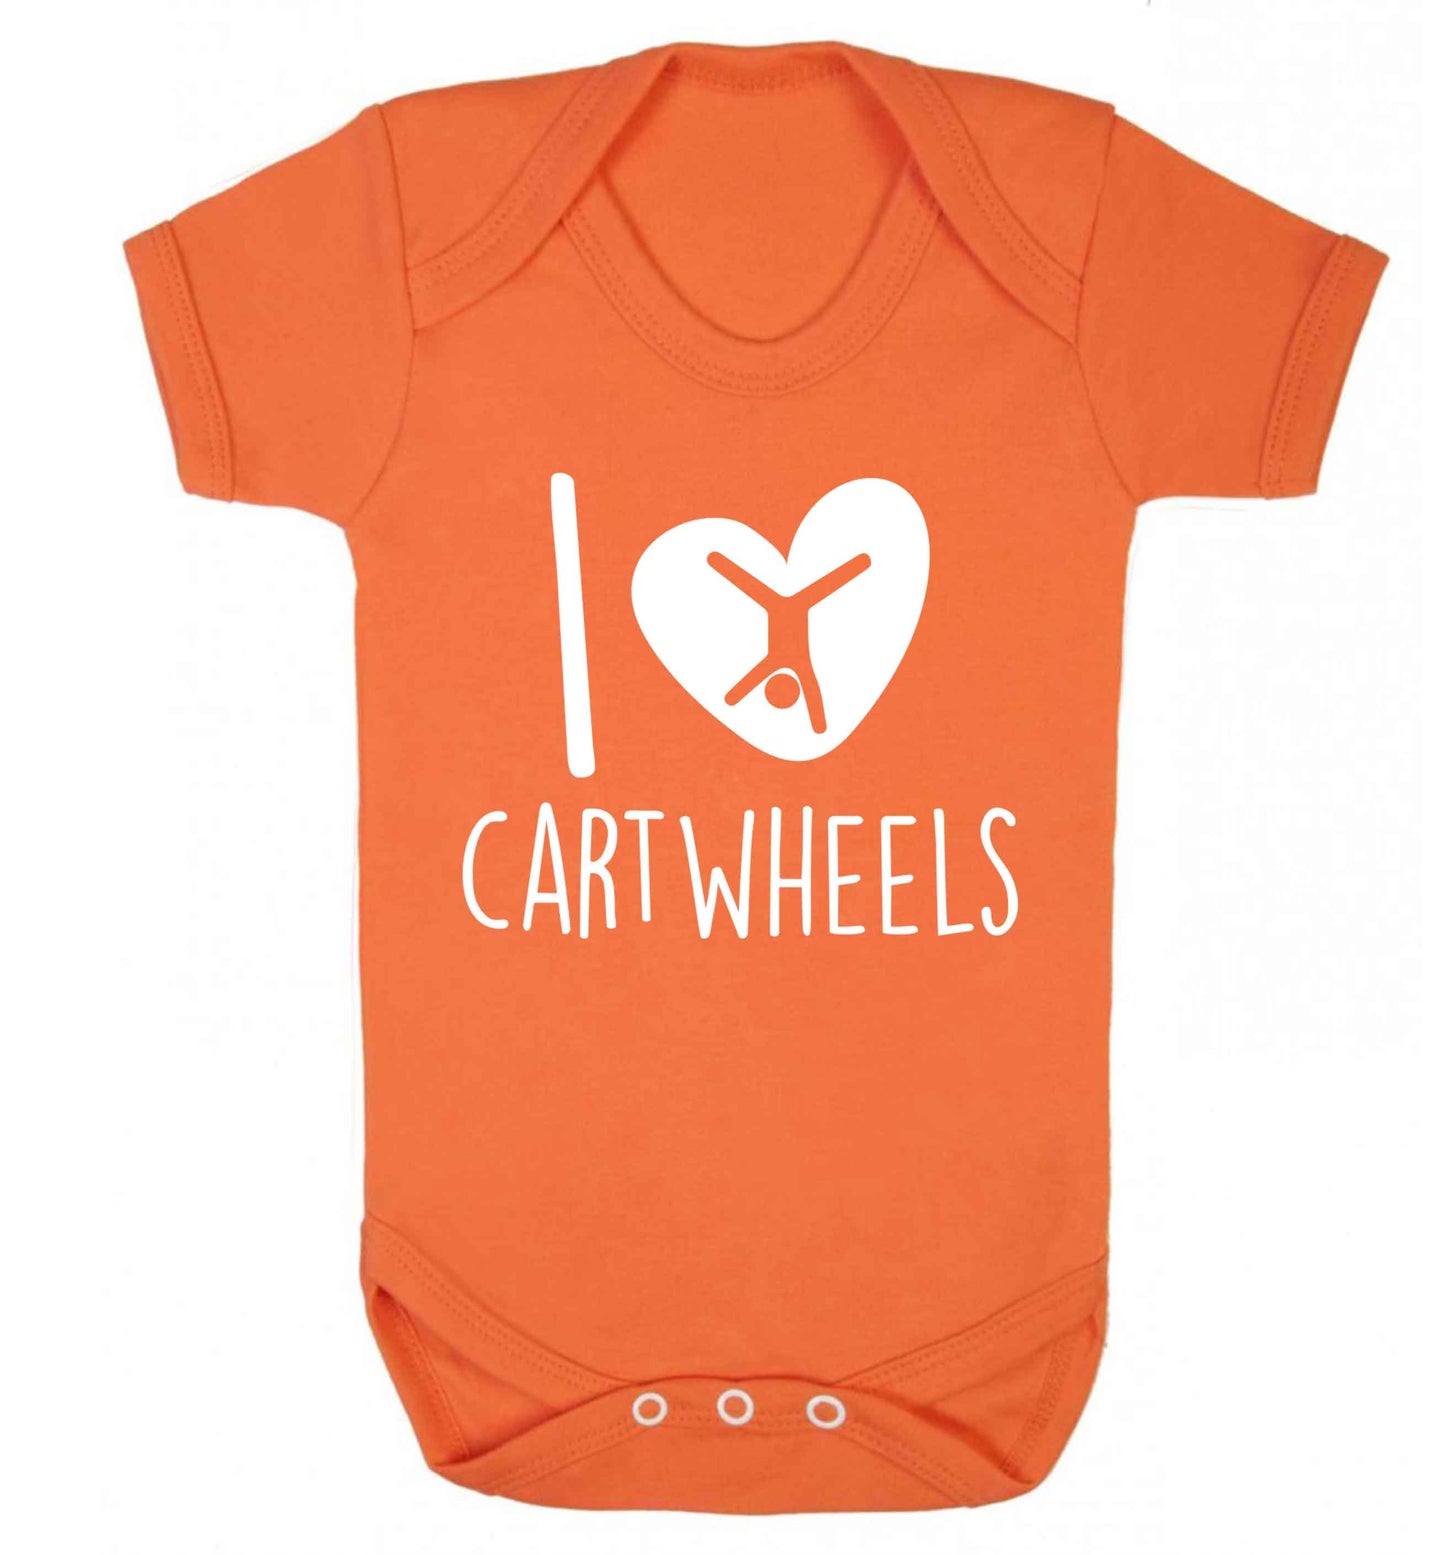 I love cartwheels Baby Vest orange 18-24 months